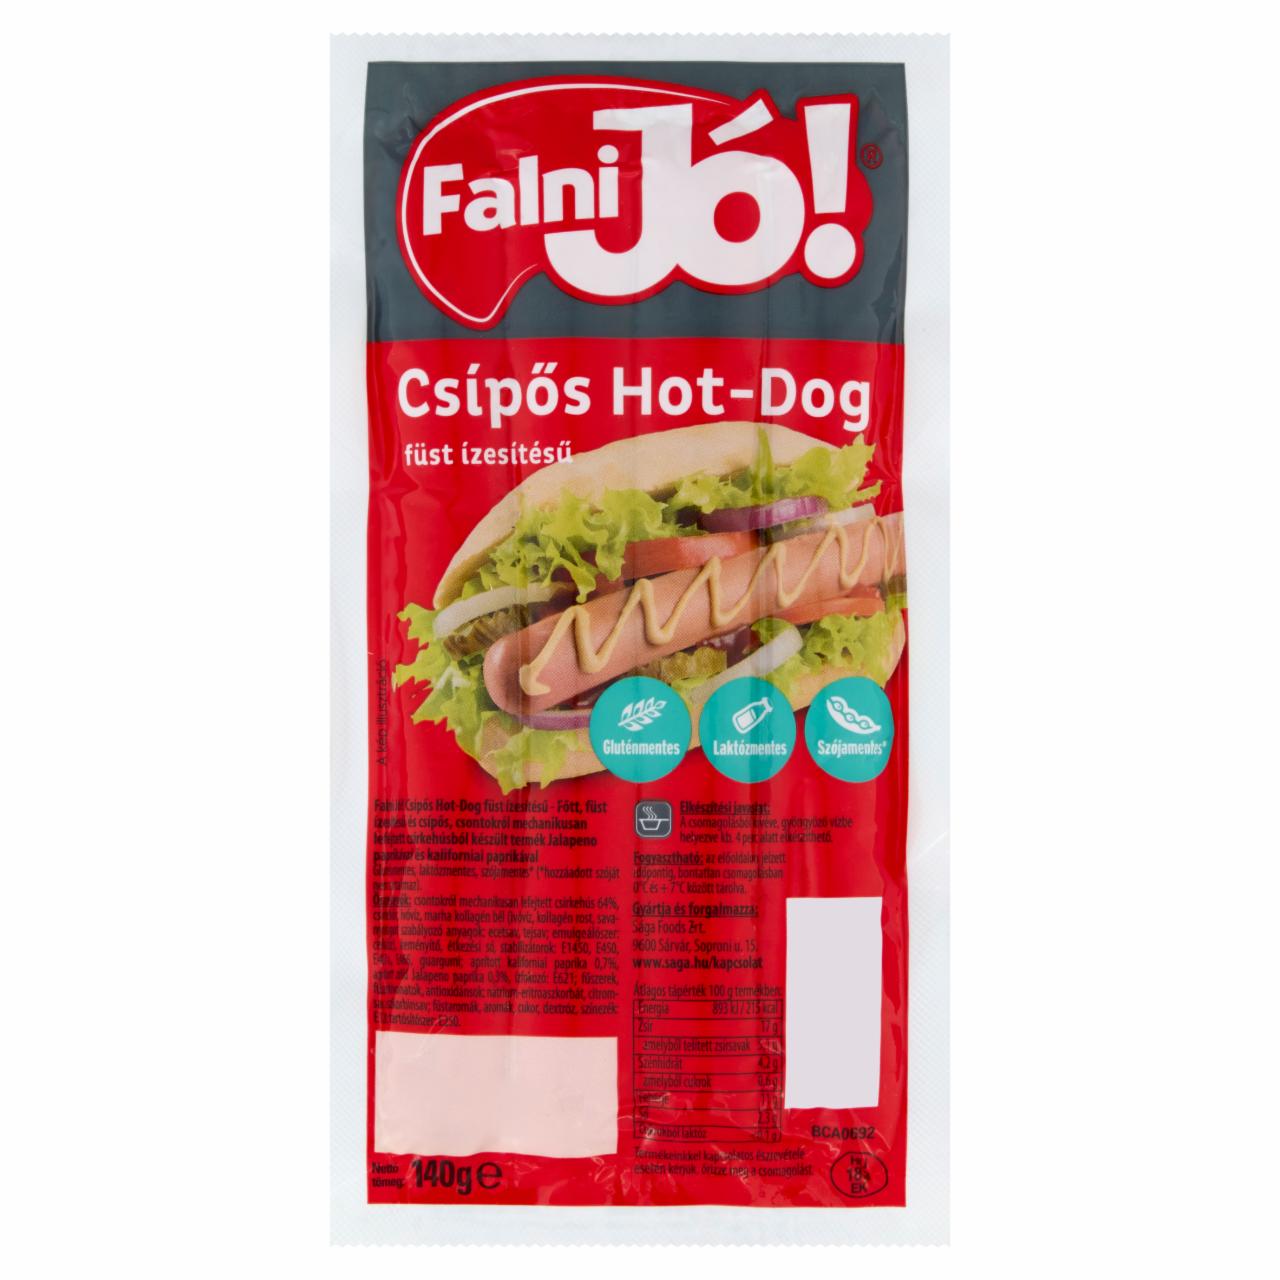 Képek - Falni Jó! füst ízesítésű csípős hot-dog 140 g